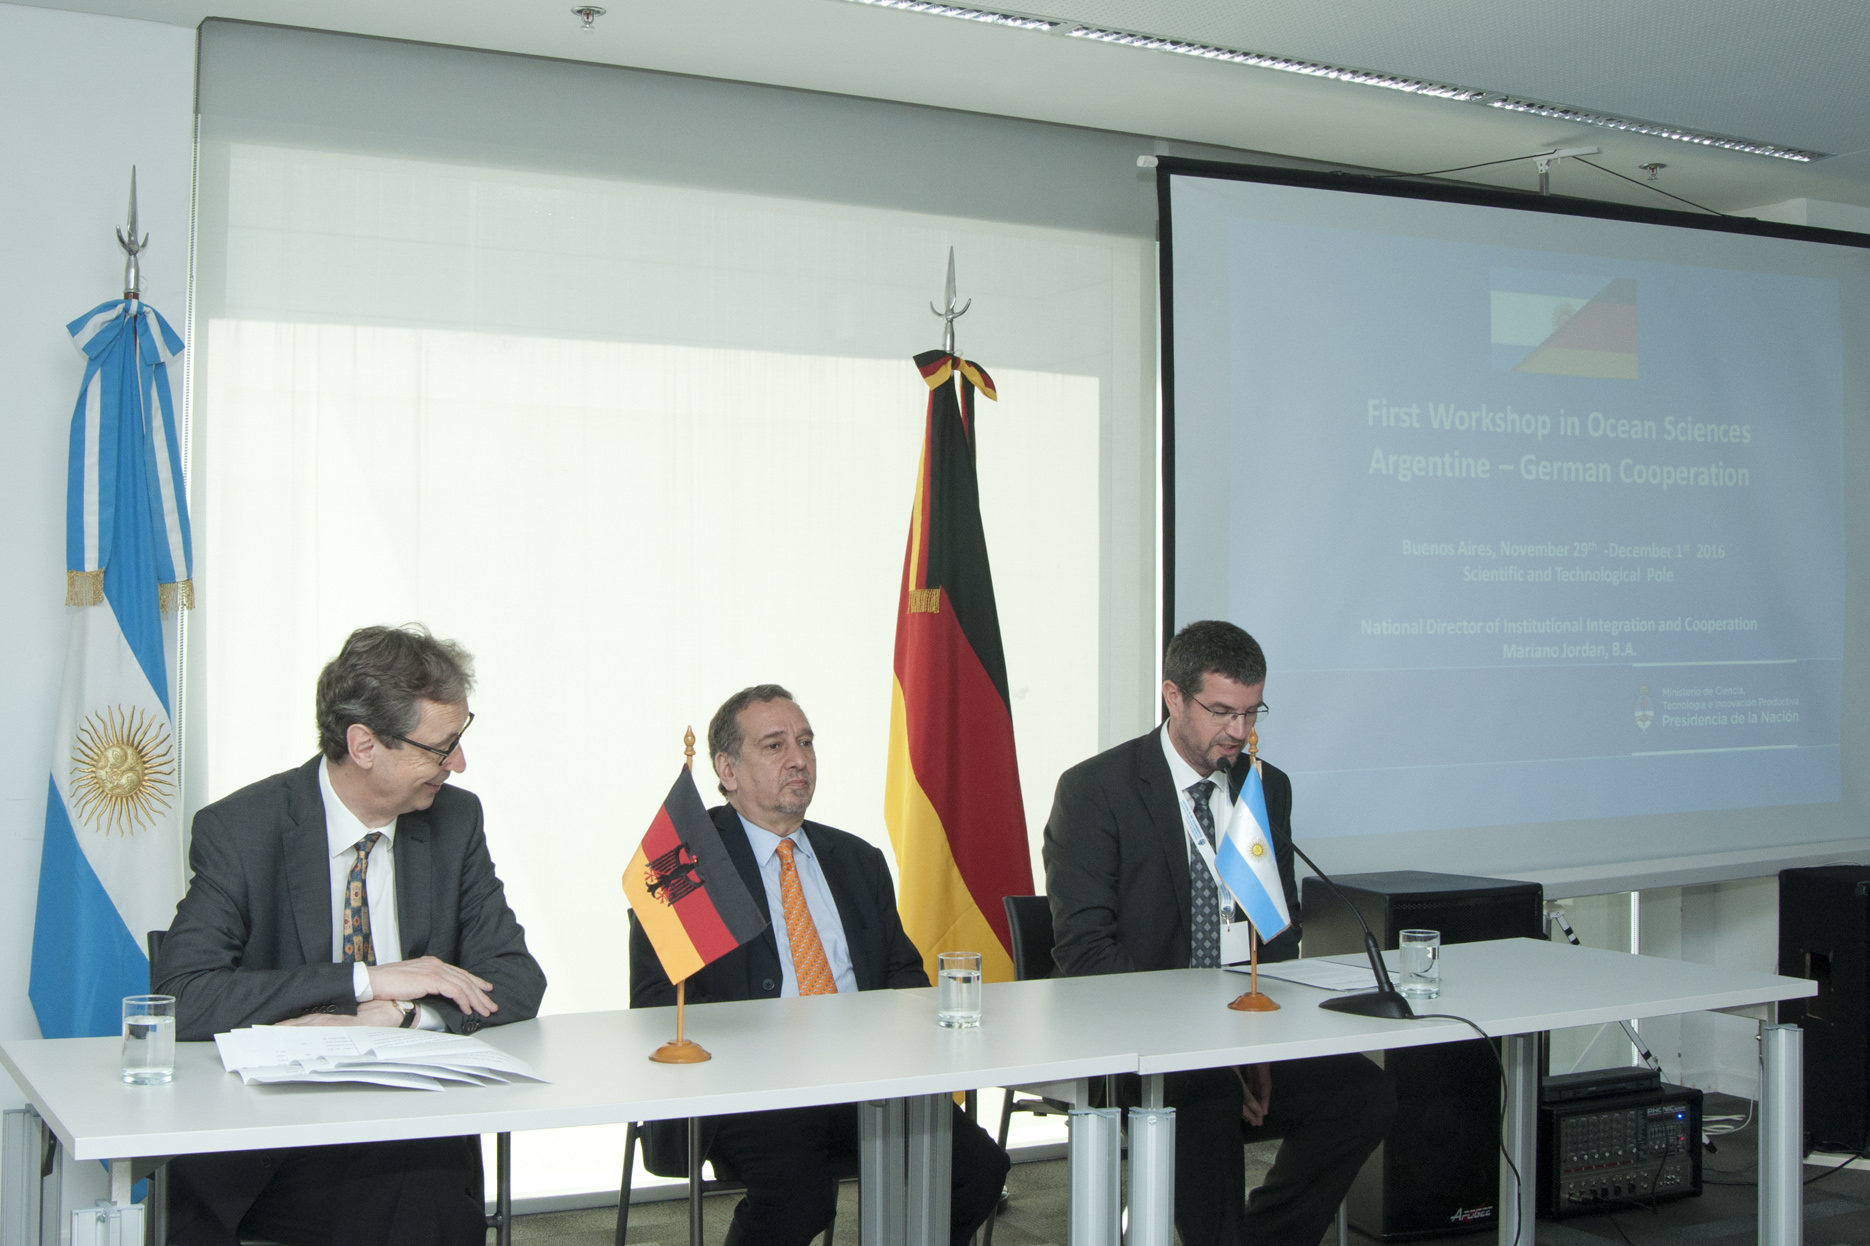 A imagem mostra as três autoridades sentadas à mesa com as bandeiras da Argentina e da Alemanha ao fundo. Do lado direito da imagem está um telão com projeção do workshop